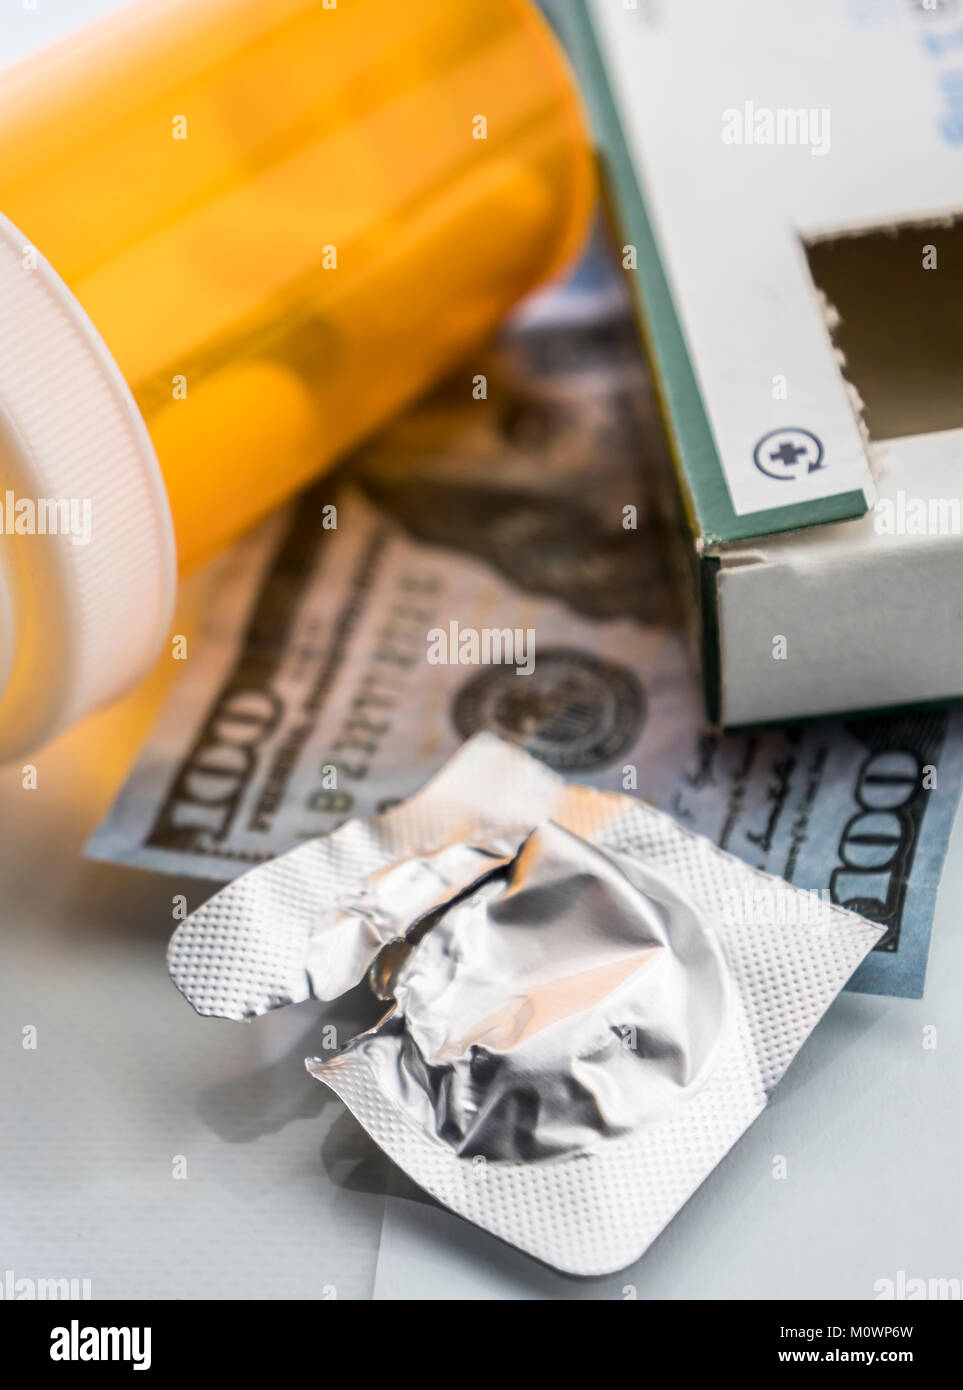 Alcuni medicinali accanto a un blocco di biglietti del dollaro, immagine concettuale Foto Stock